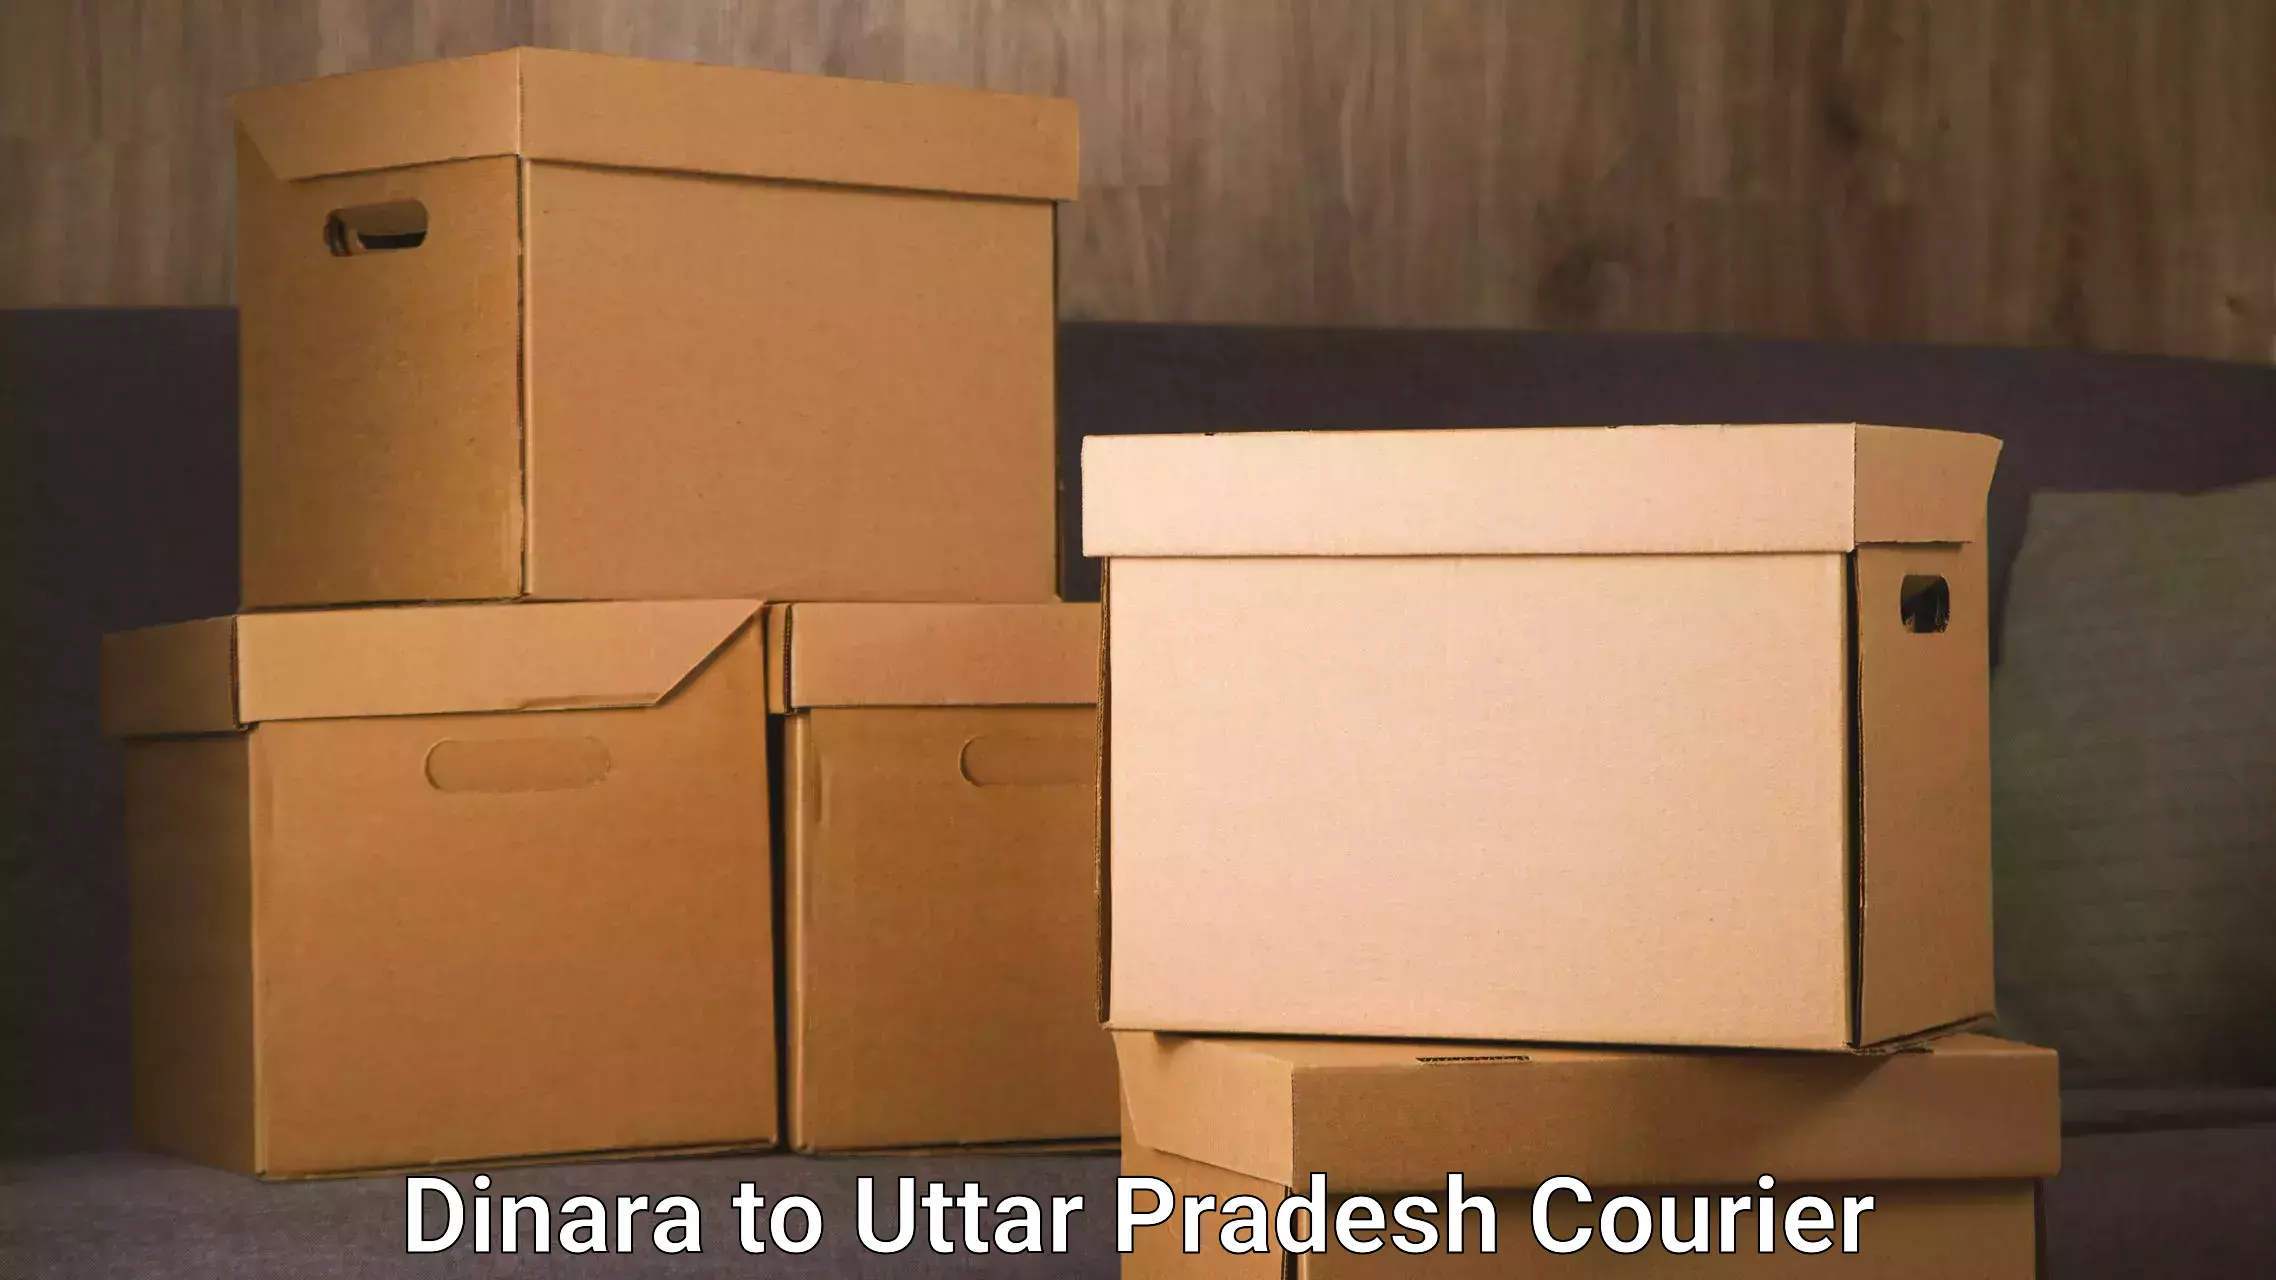 Furniture transport solutions in Dinara to Uttar Pradesh